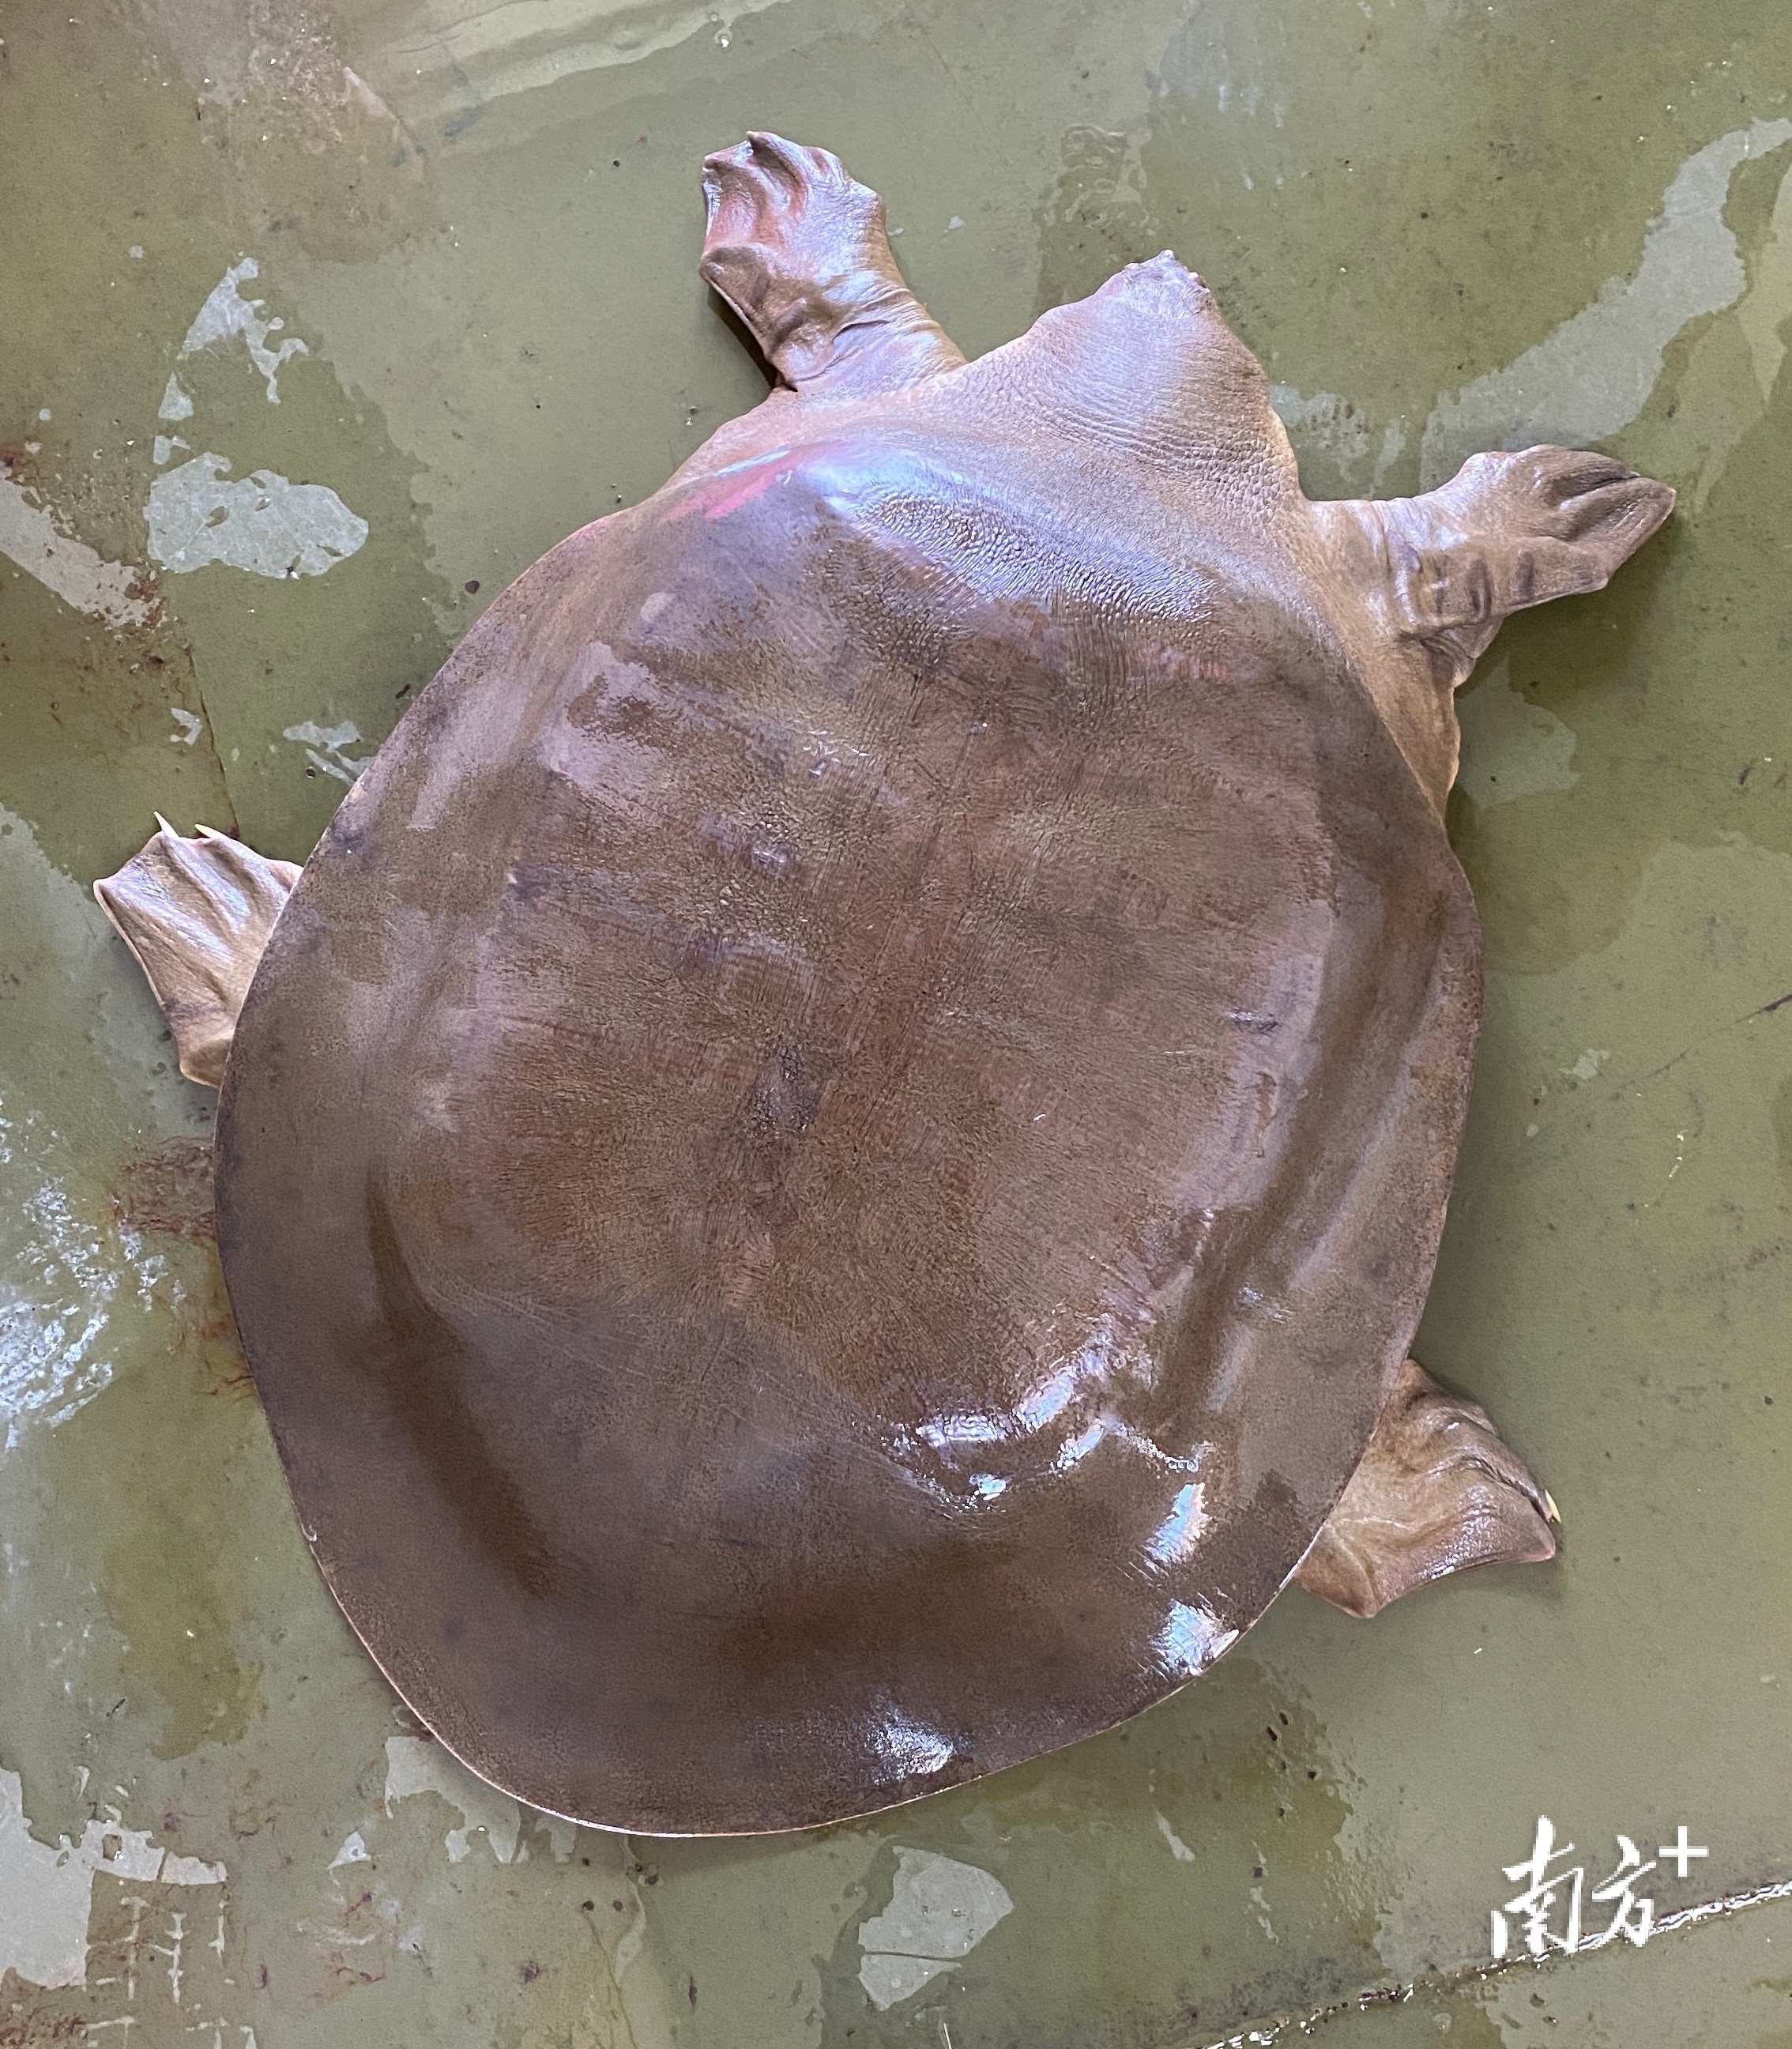 韩江潮州段再现水中大熊猫鼋,体重超19公斤